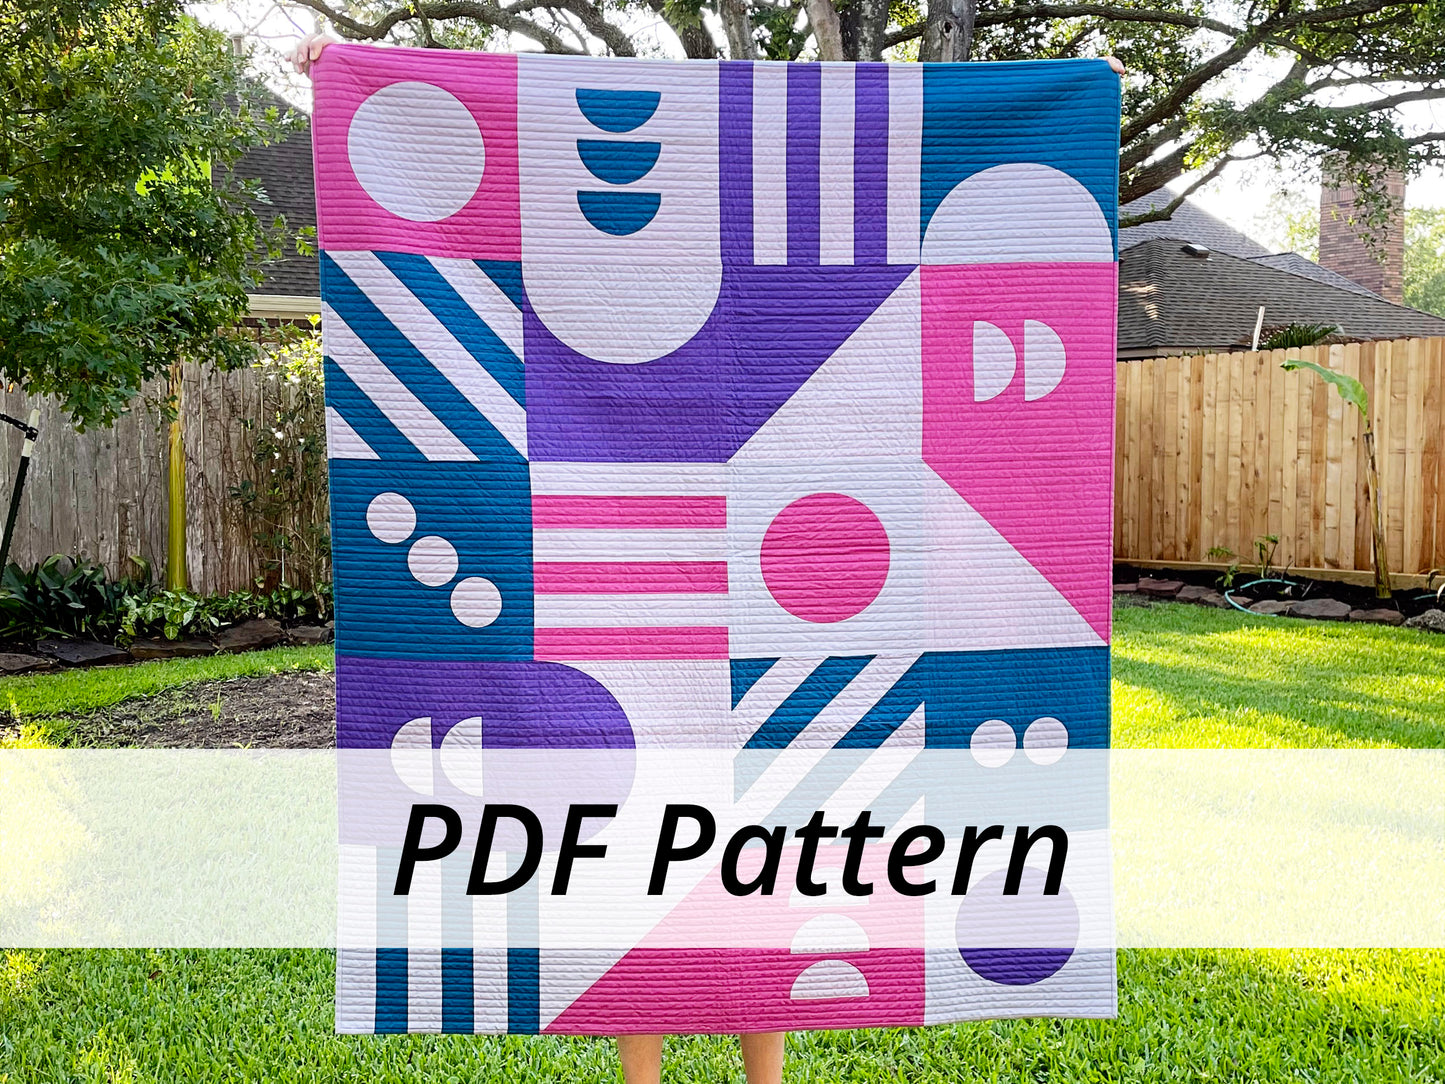 Game Night PDF Pattern